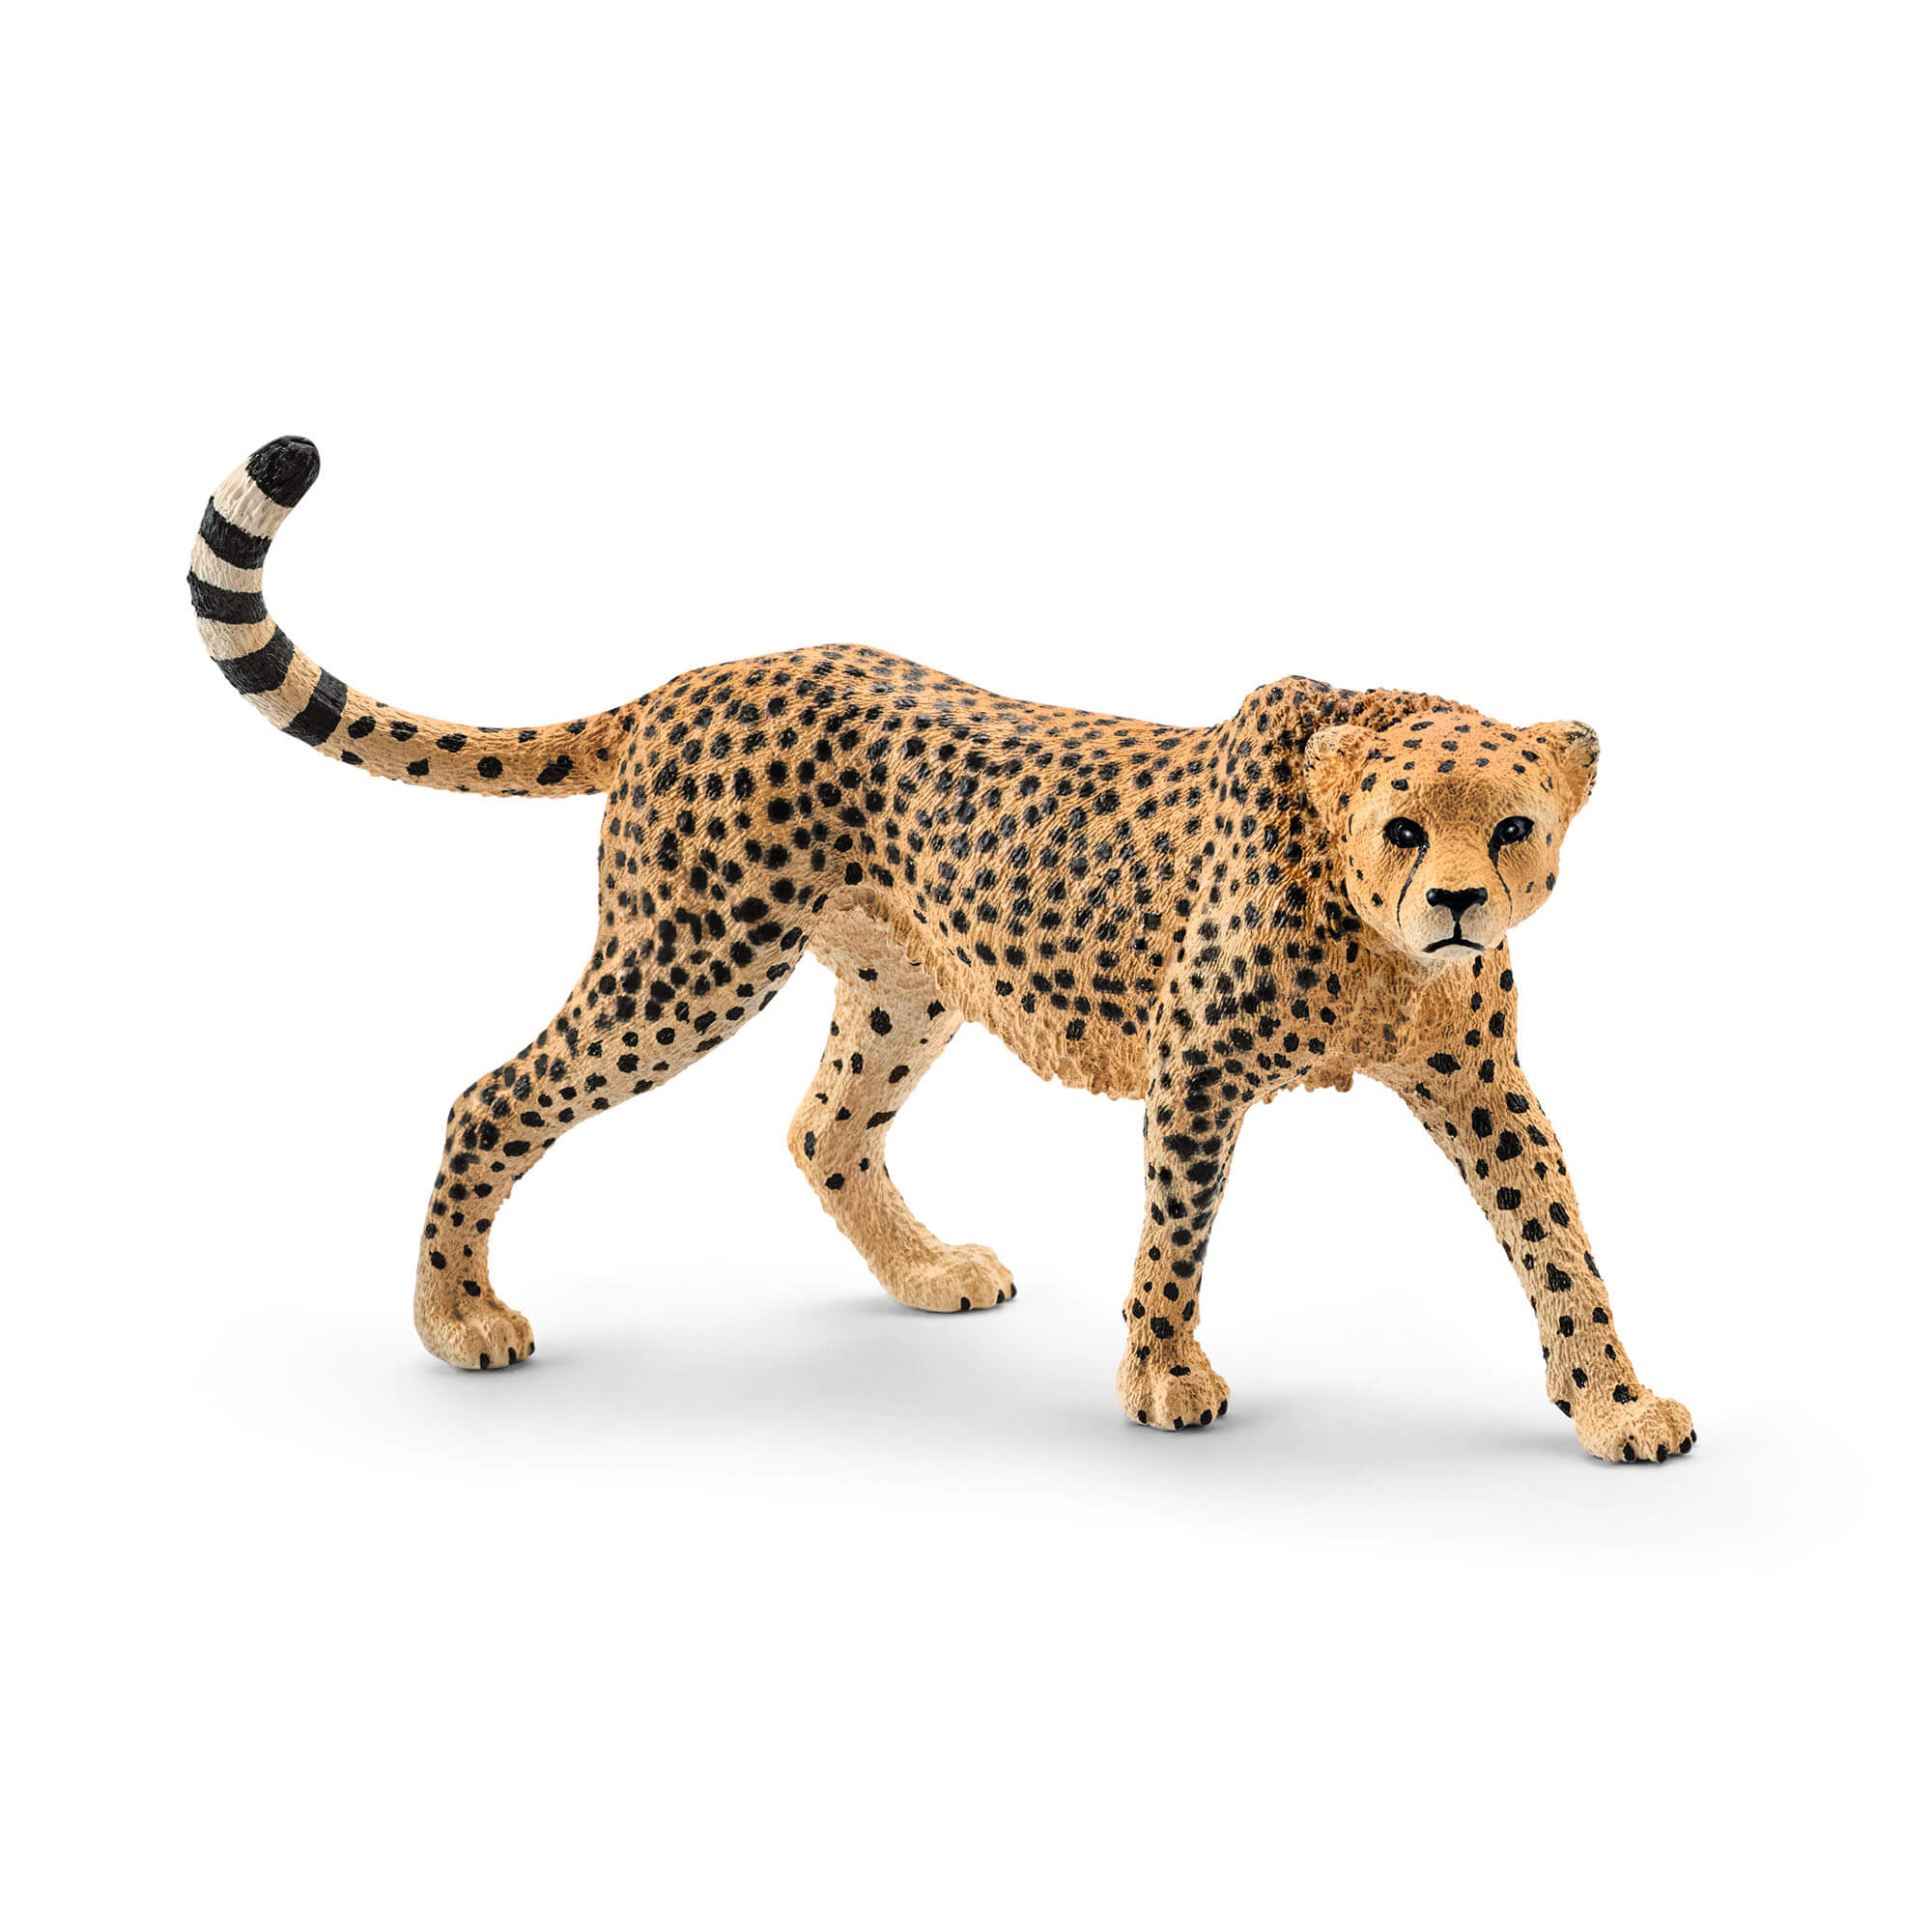 Schleich Wild Life Female Cheetah Animal Figure